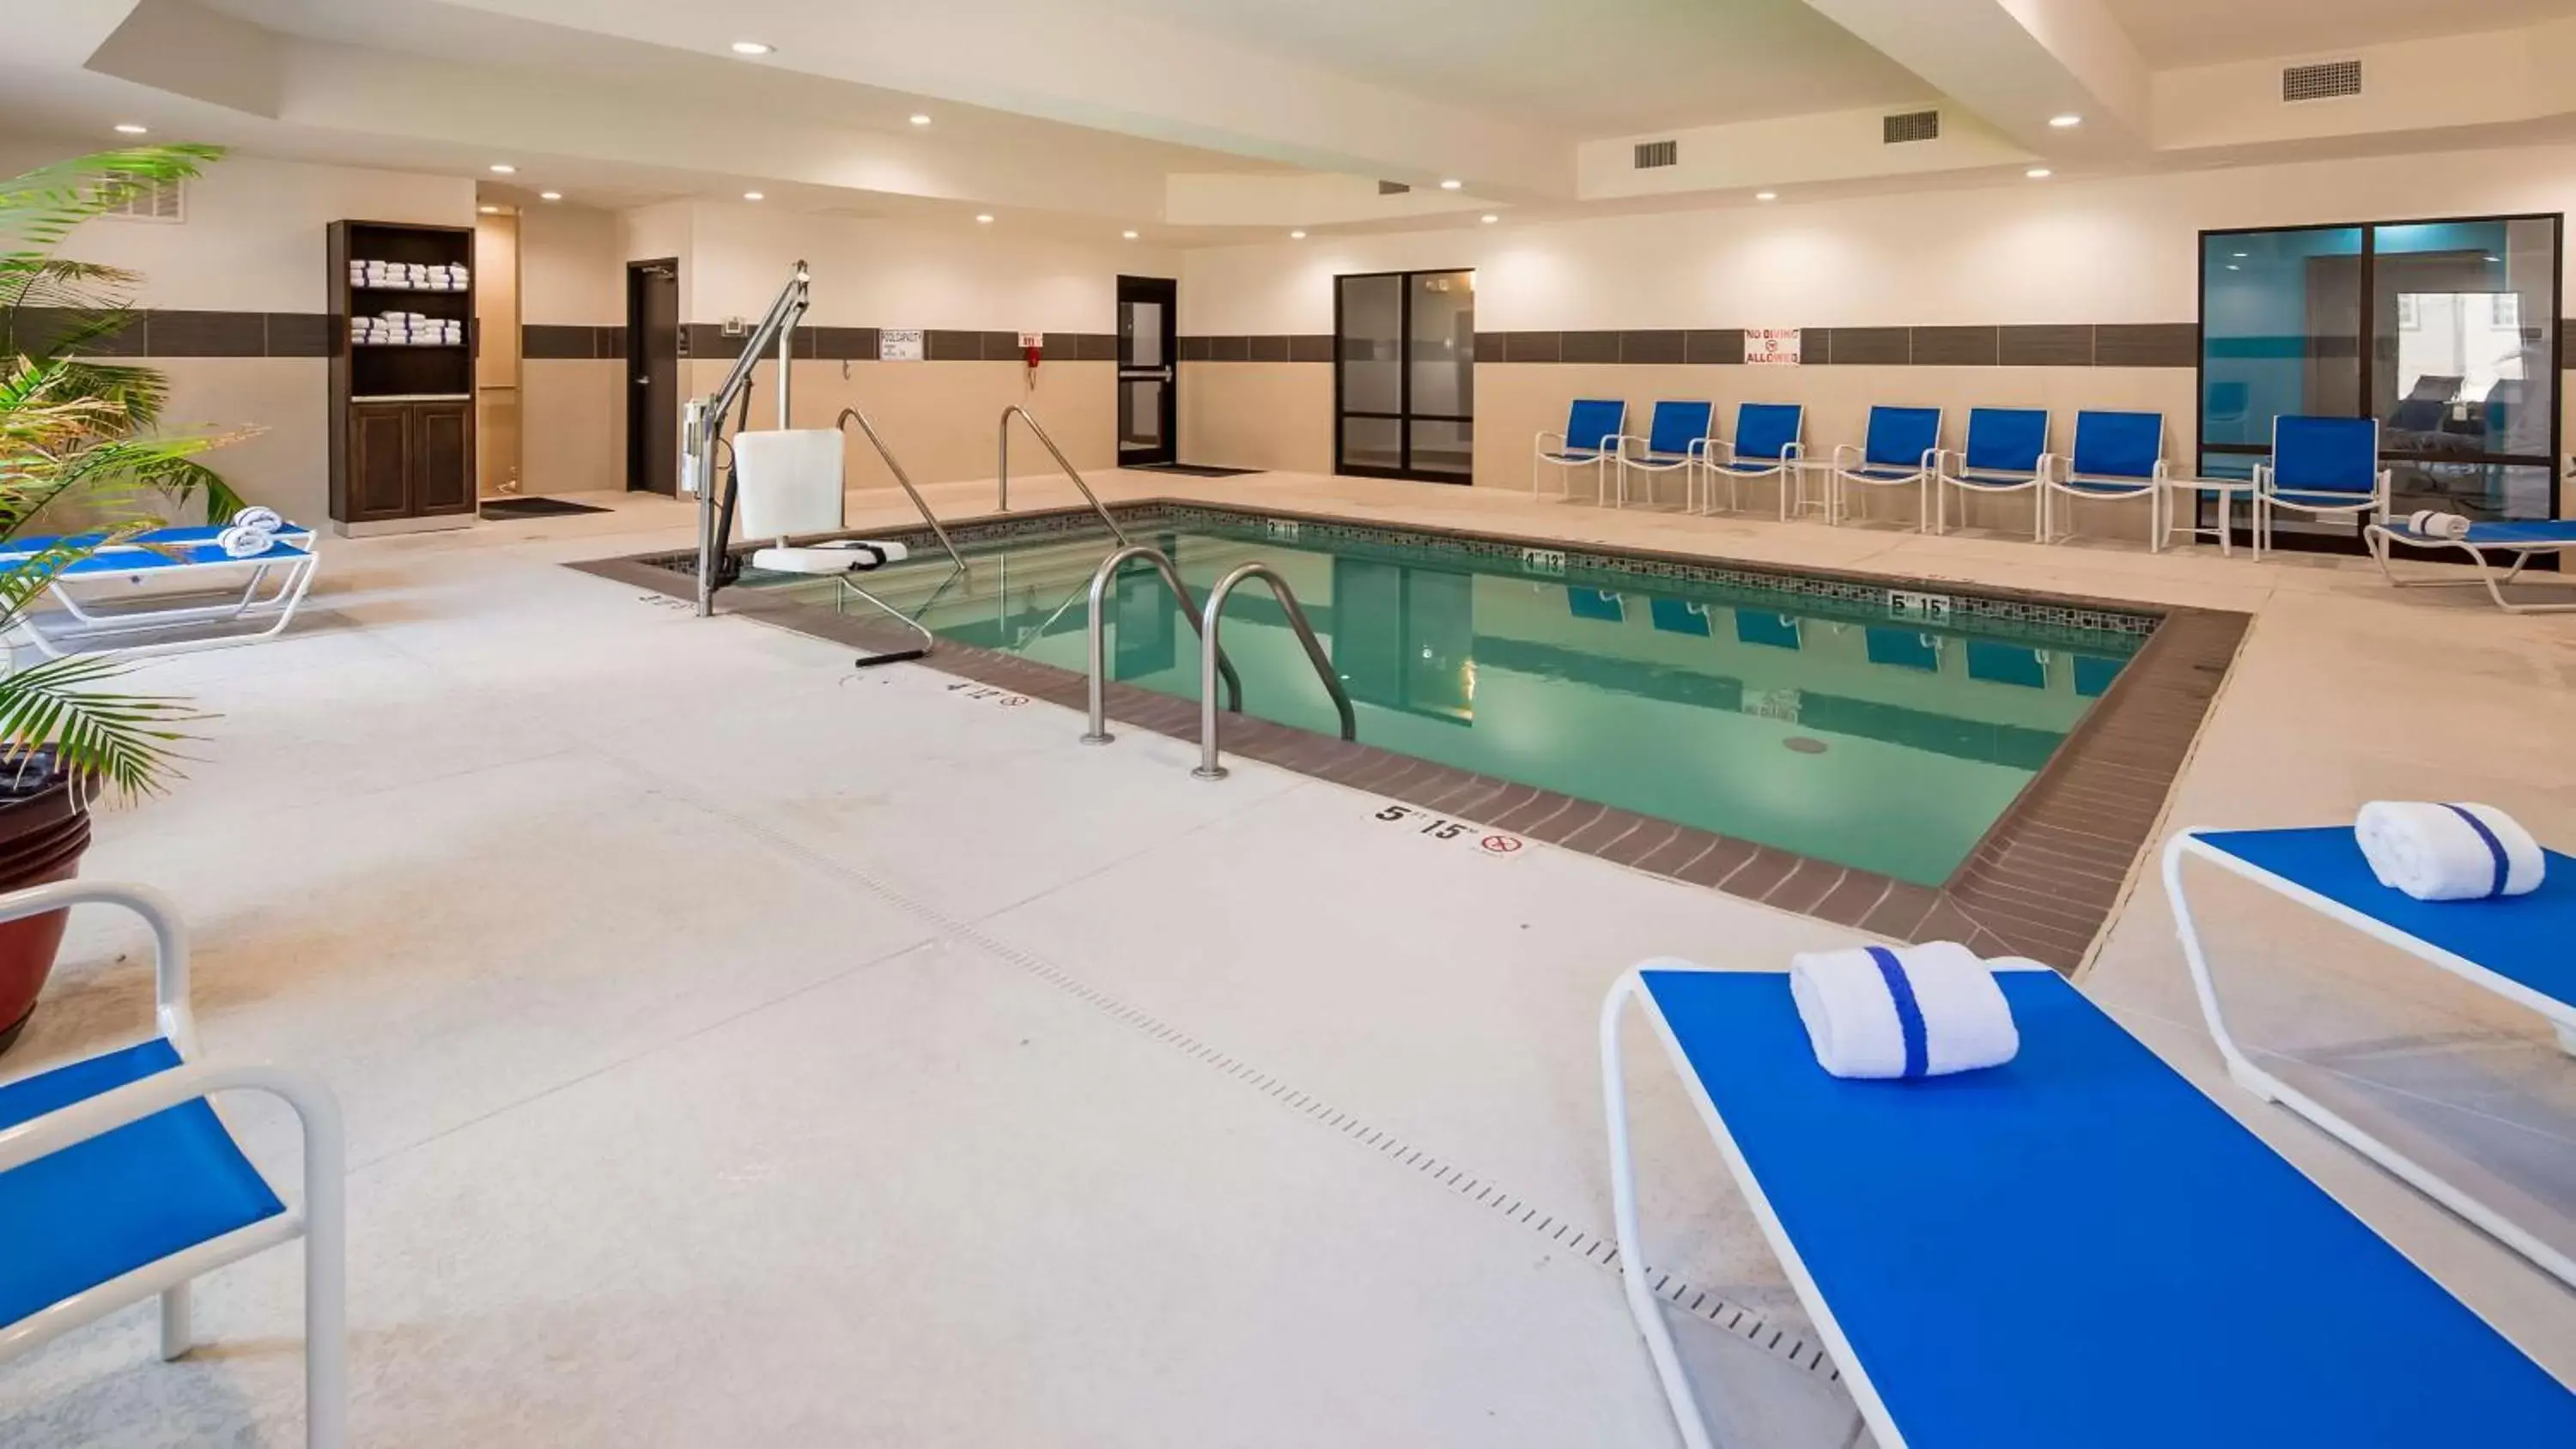 On site, Swimming Pool in Best Western Plus Ardmore Inn & Suites